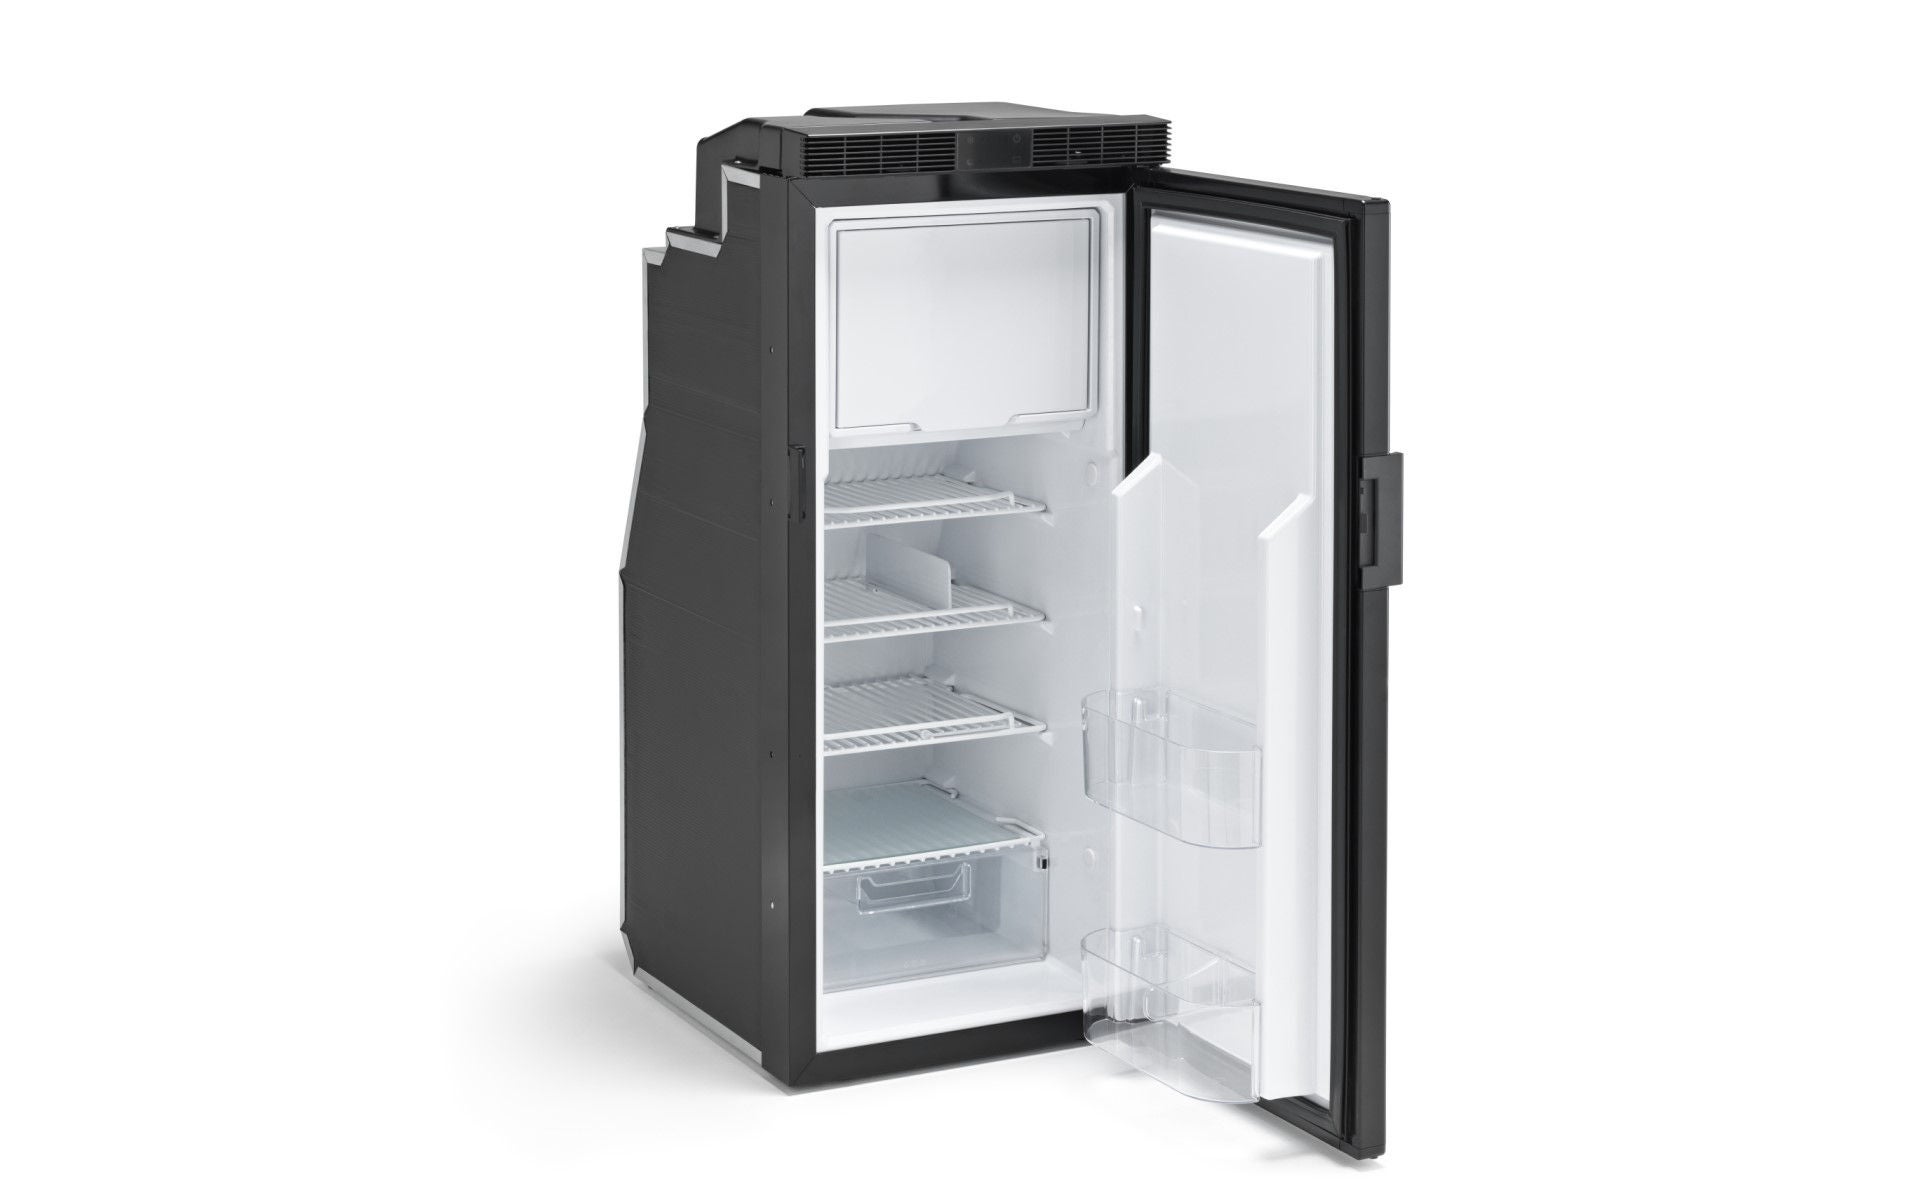 Product picture of Freeline Slim 90 fridge with open door